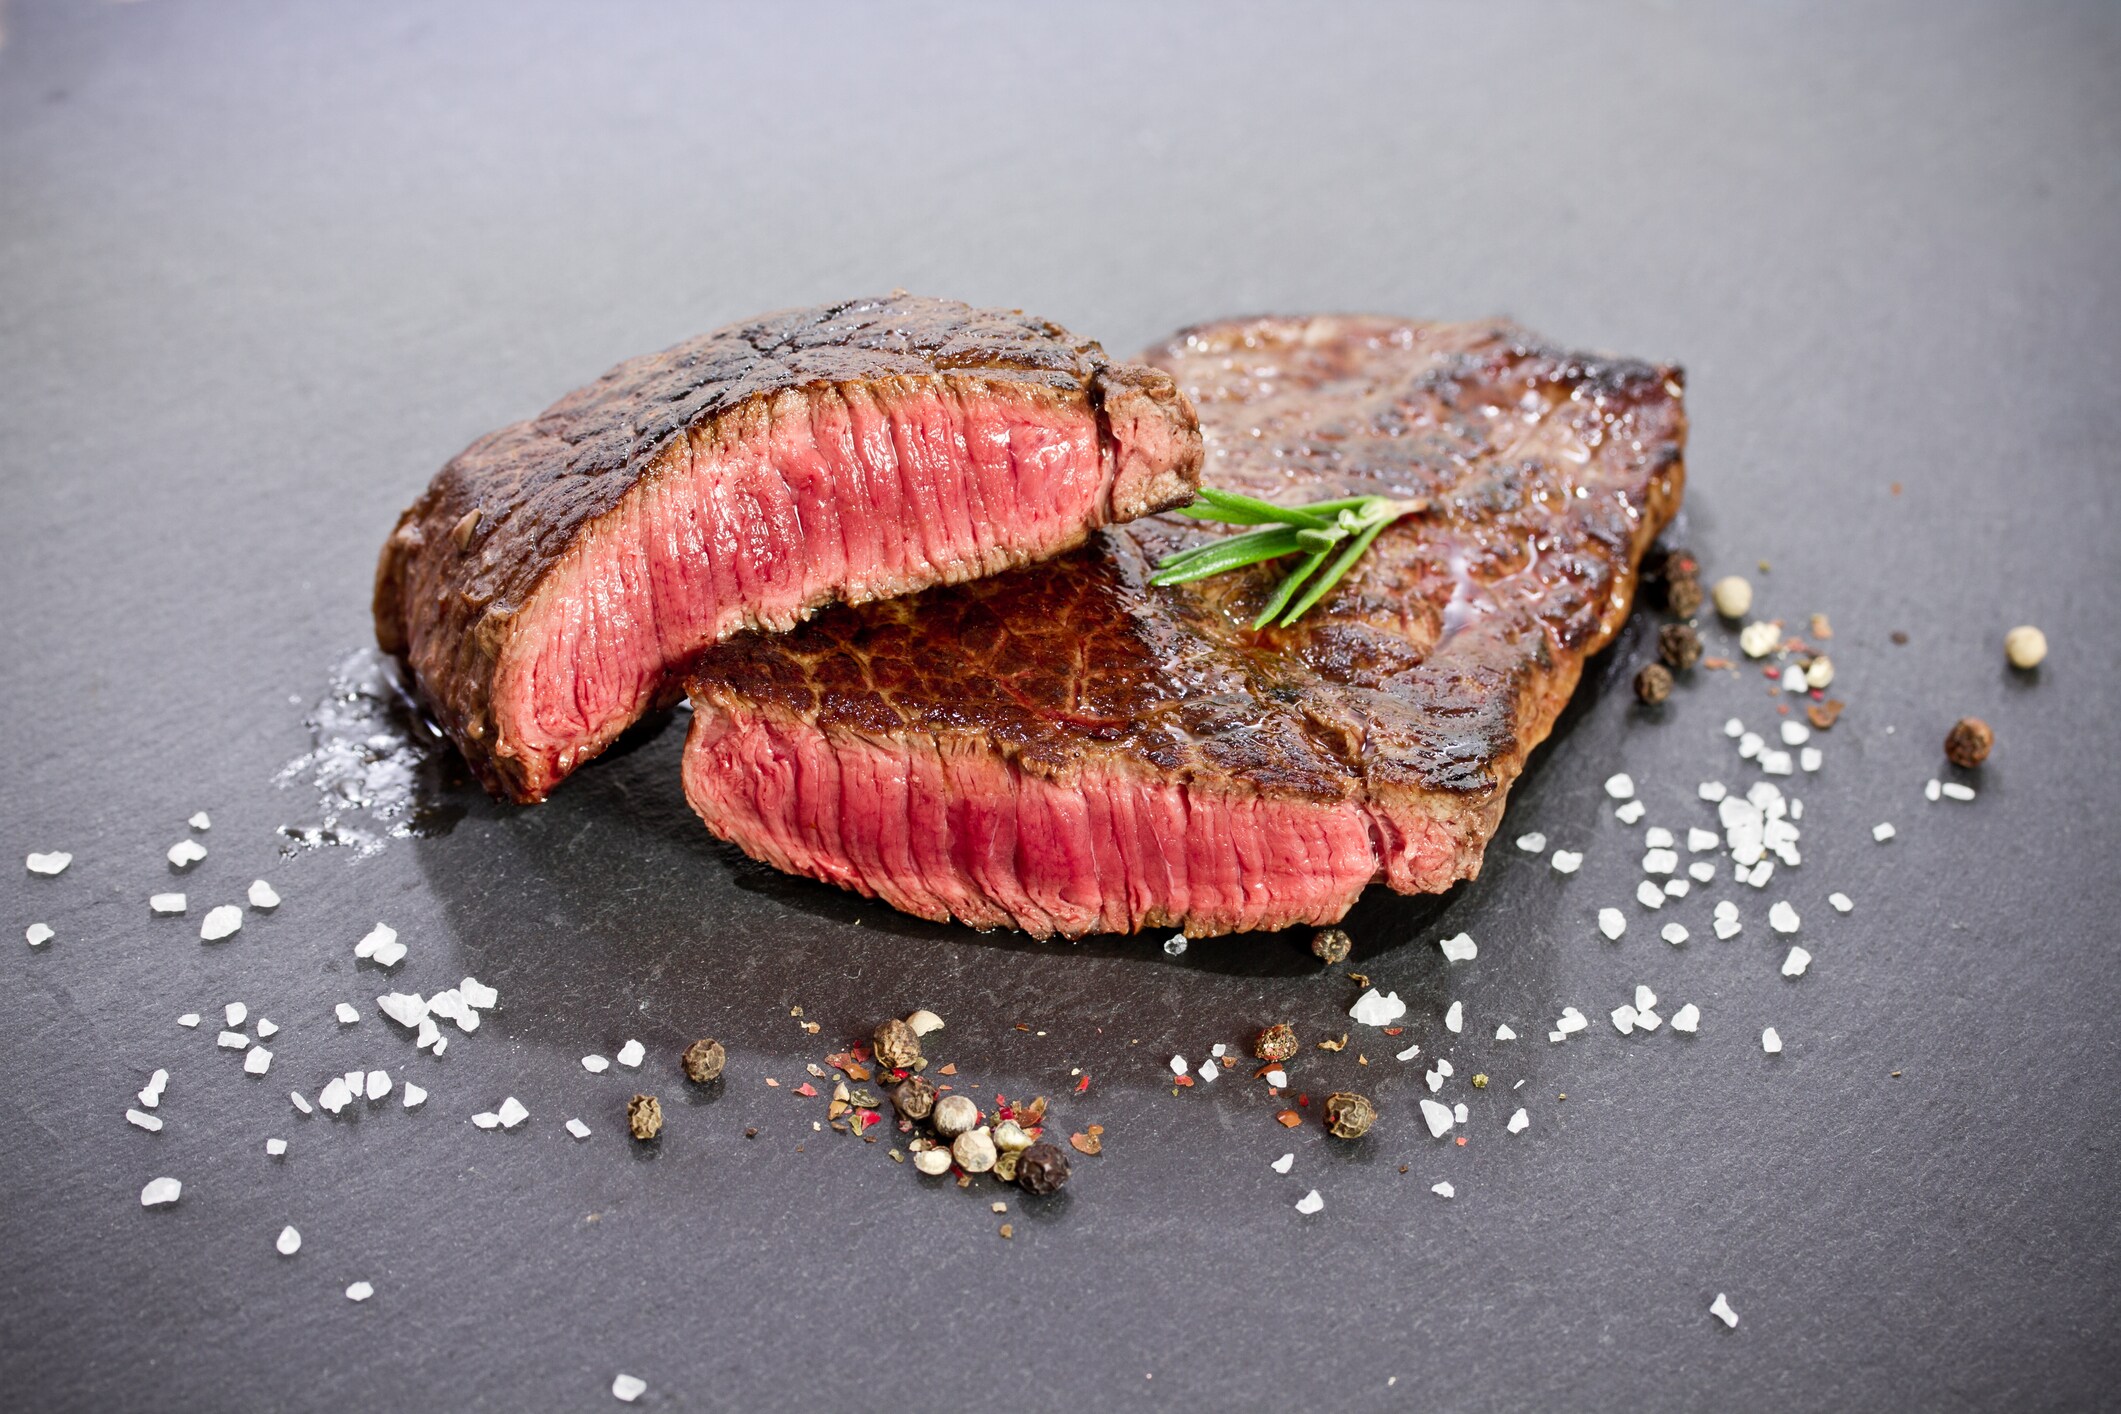 3. Rood vlees veroorzaakt darmkanker 